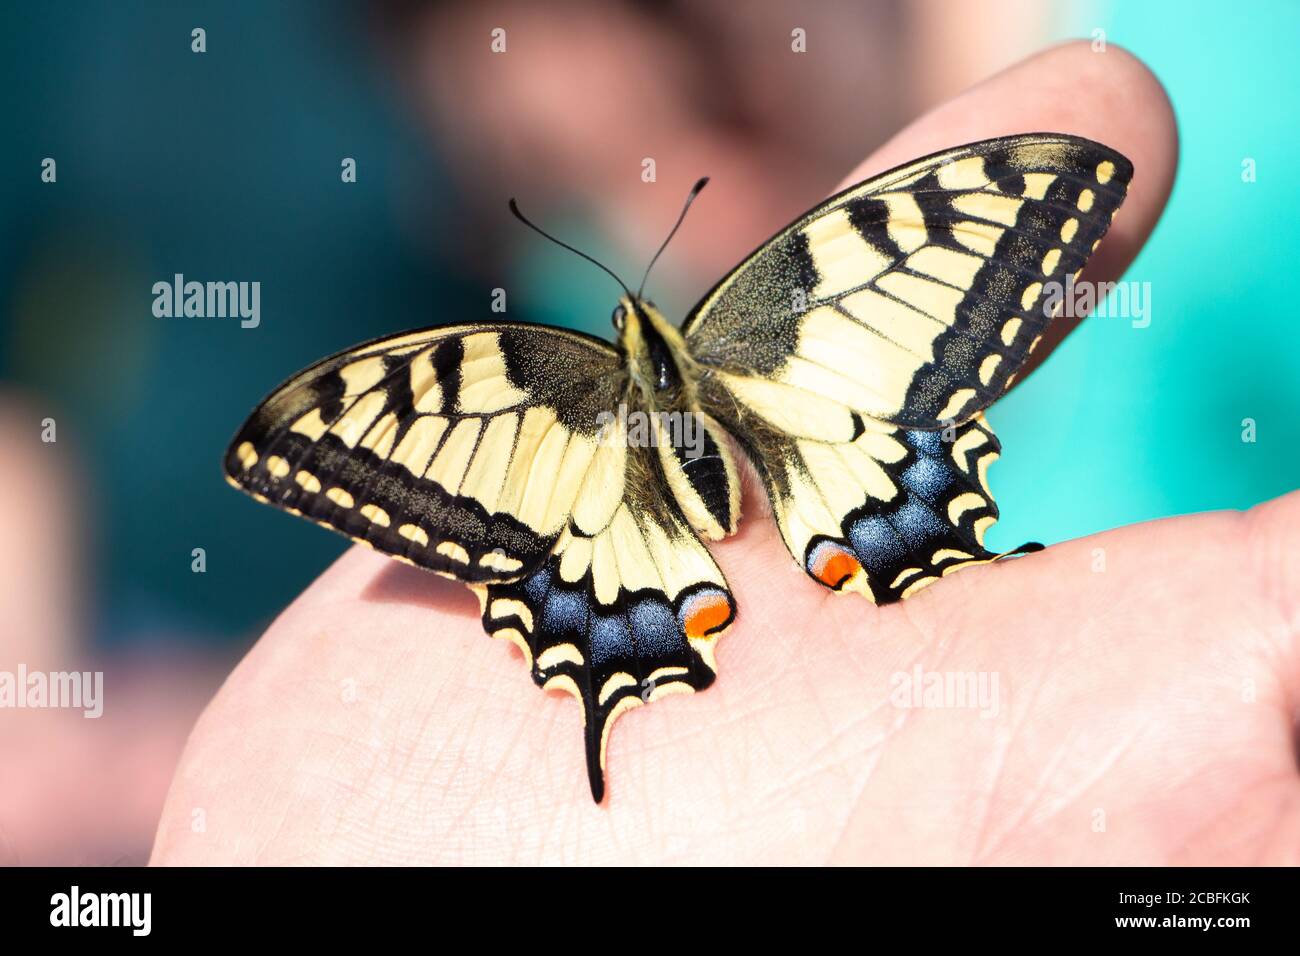 Farfalla Machaon (Papilio machaon, coda di rondine) seduta sulla mano. Bellissimo insetto colorato con ali puntate gialle, arancioni, blu e nere. Ma Foto Stock